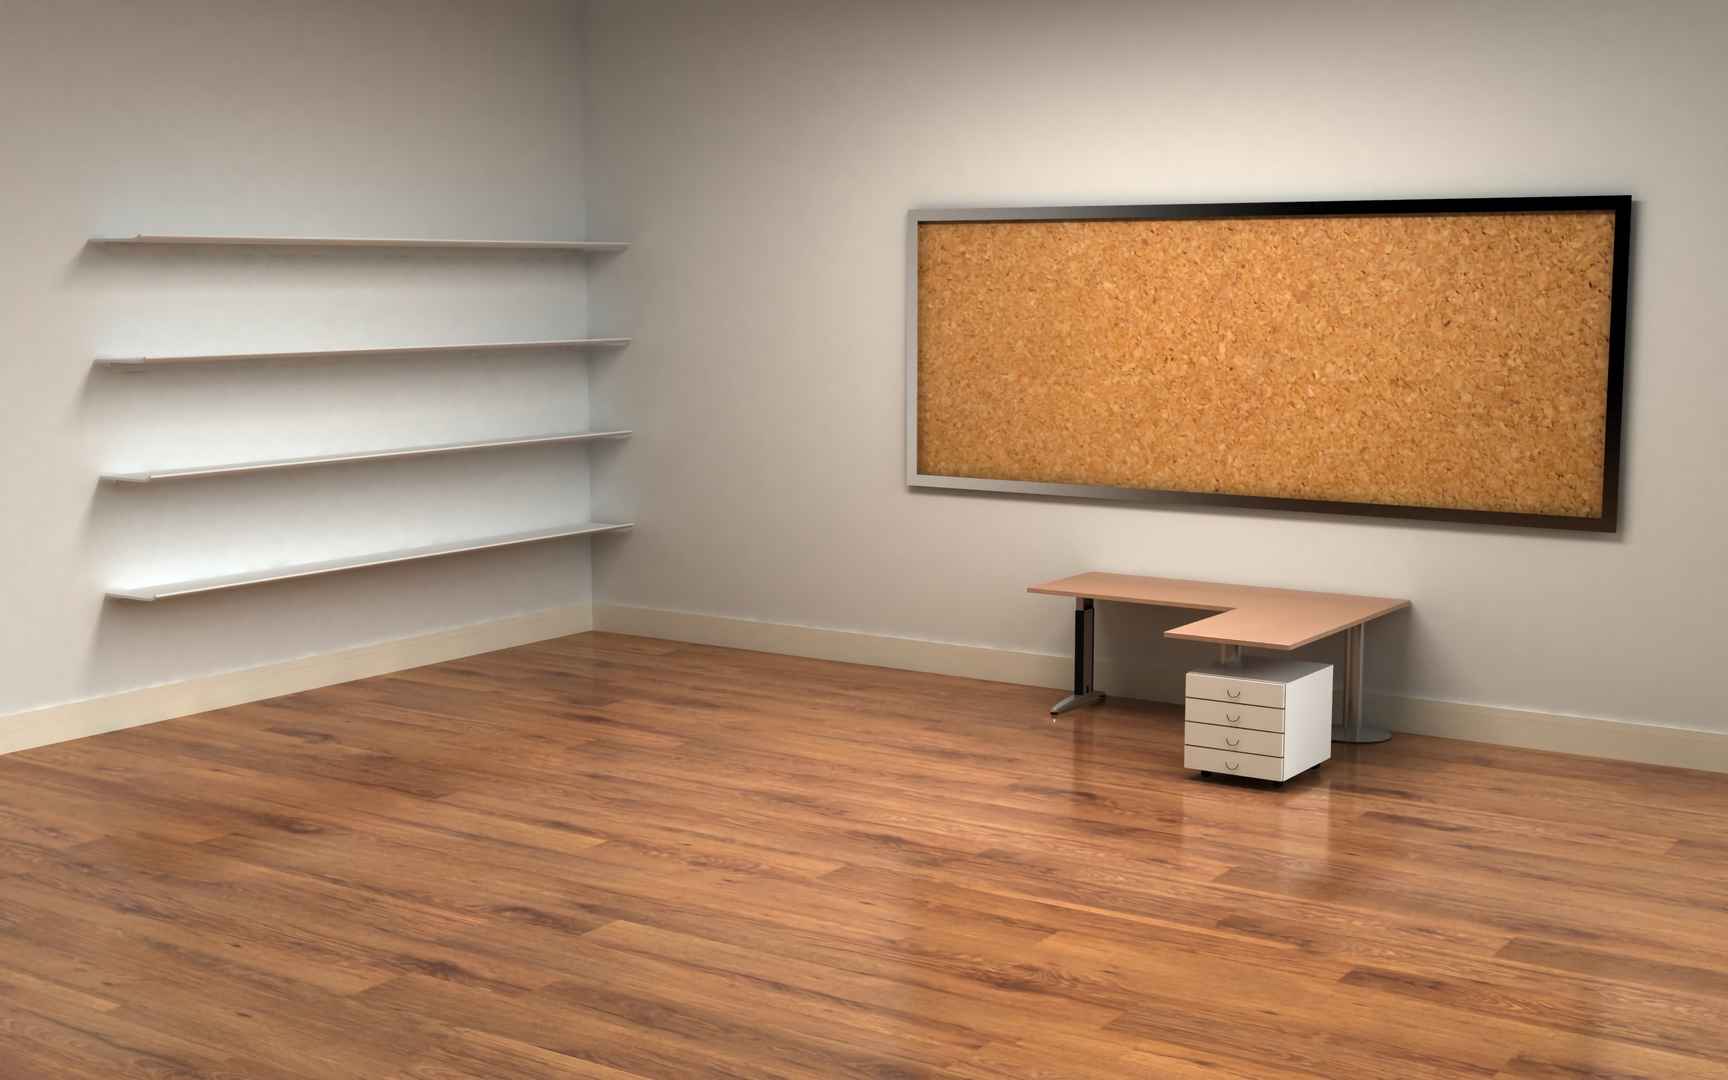 办公室 书架 桌子 木地板 4k 3d壁纸